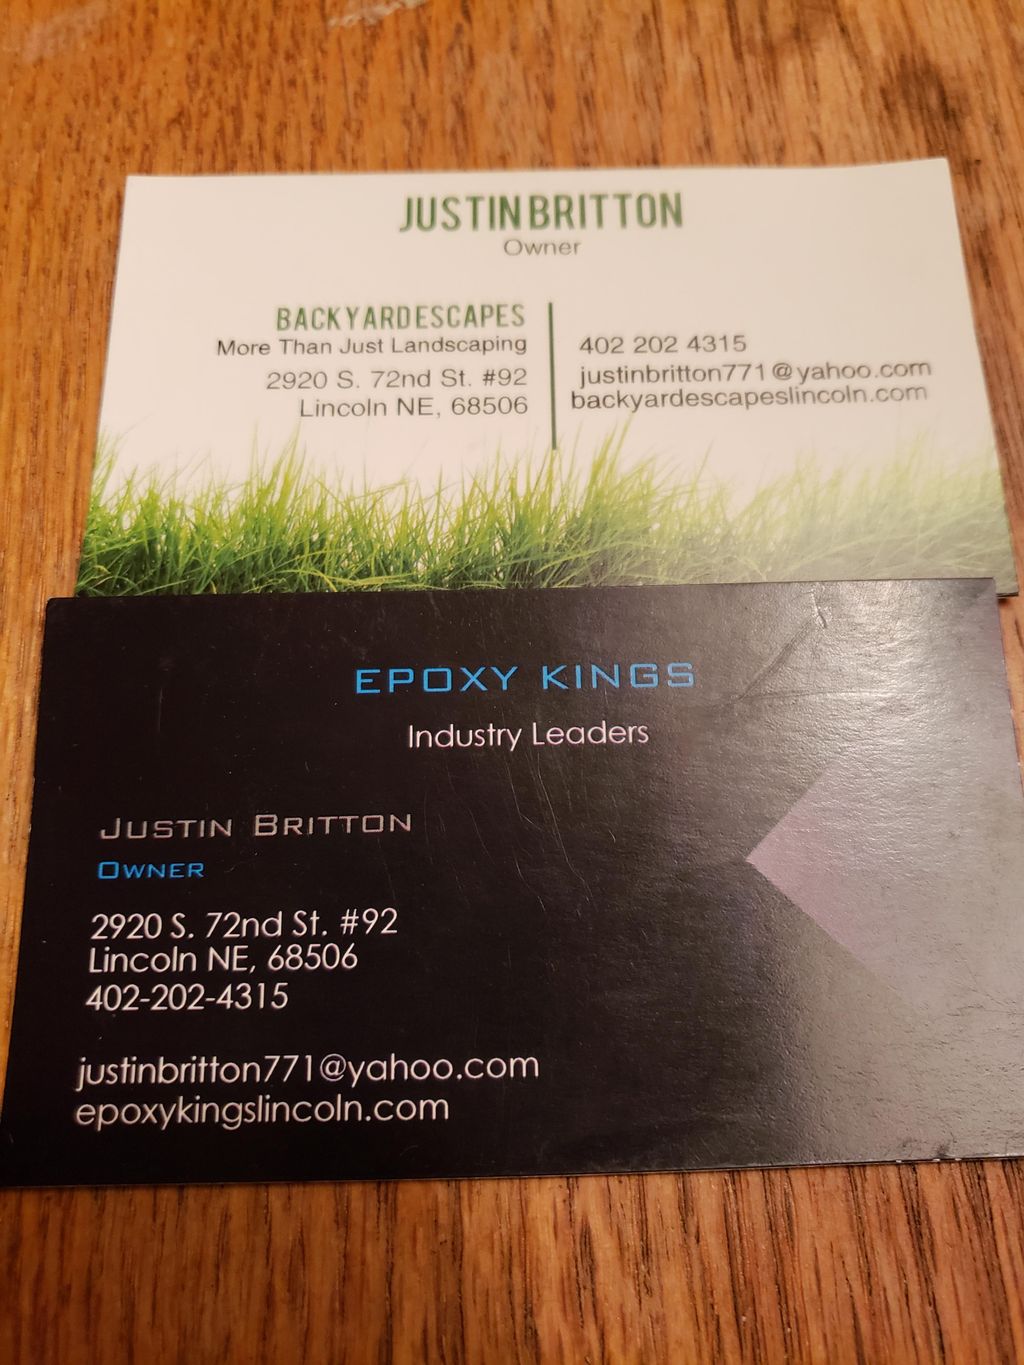 Justin Britton (Epoxy Kings / Backyard Escapes)